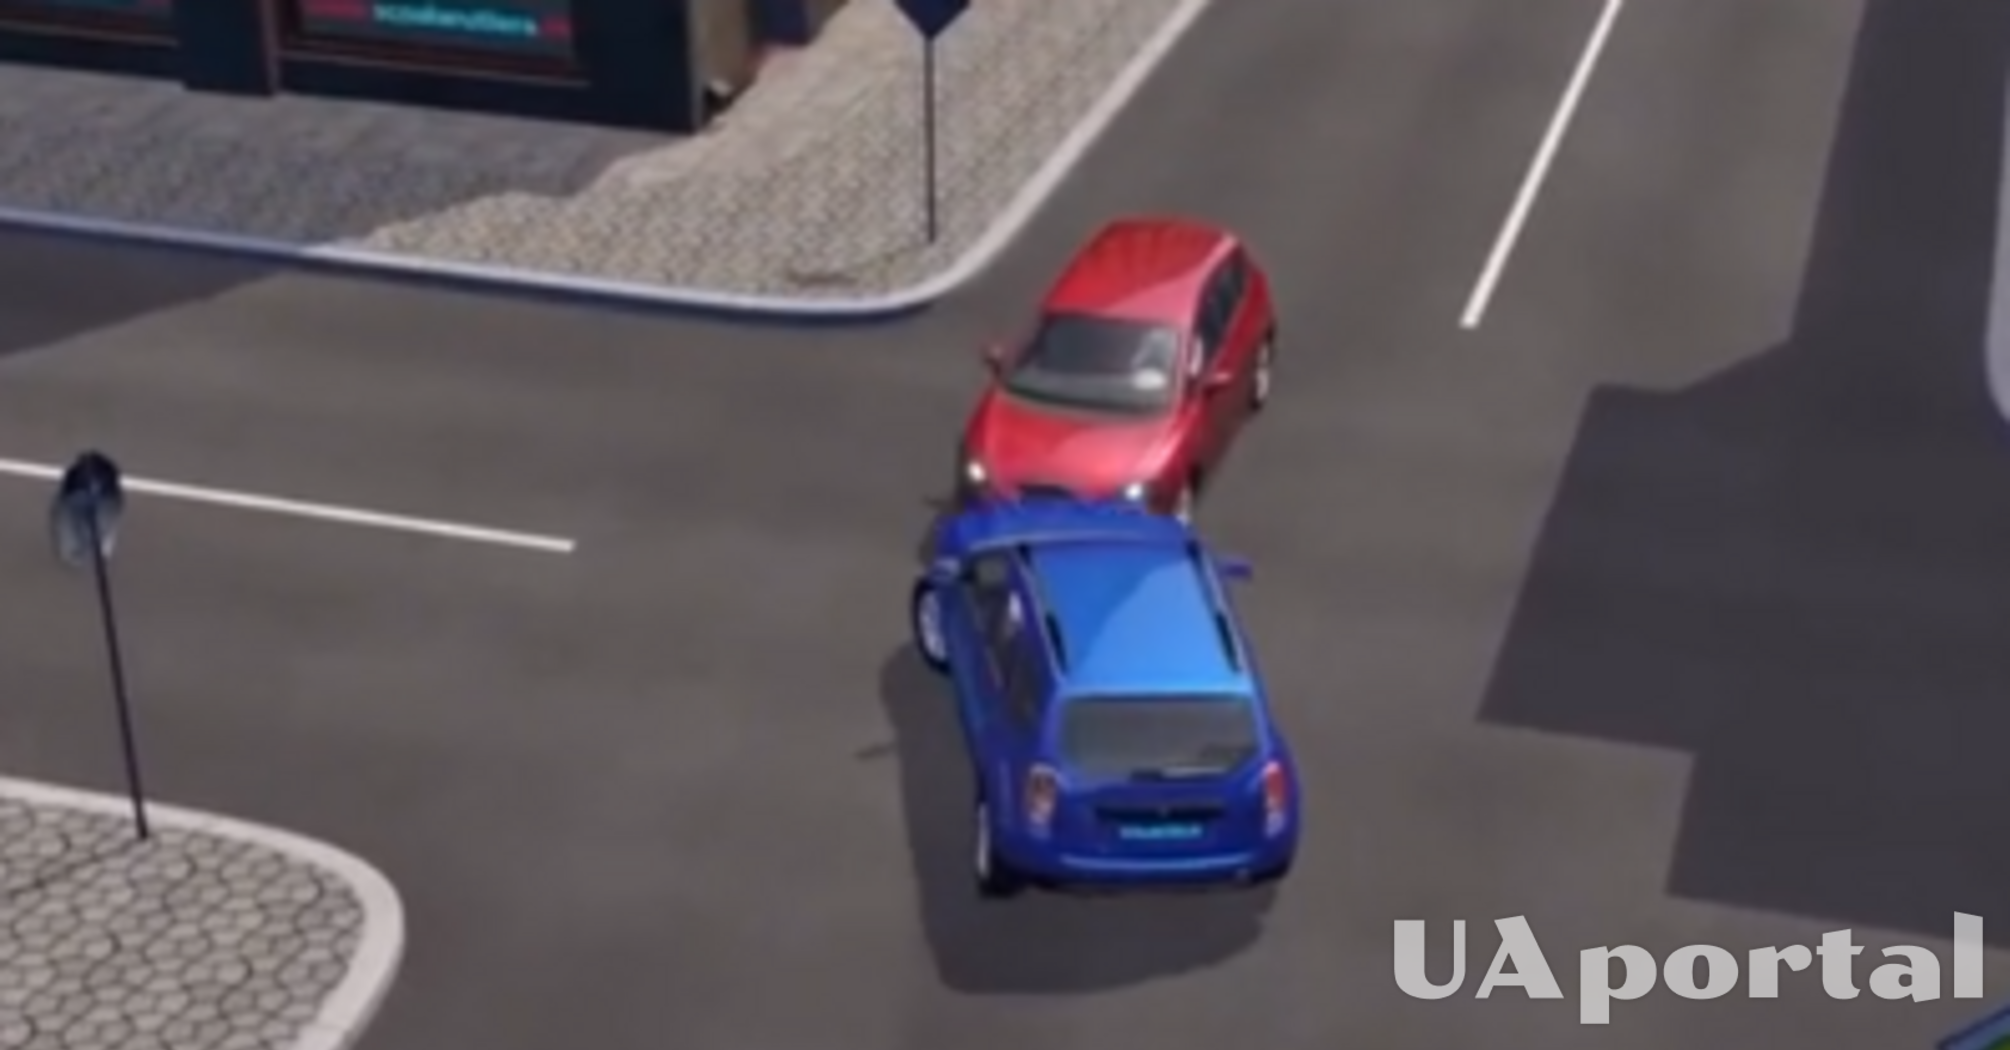 Хто винен у ДТП, синій чи червоний автомобіль: тест на знання ПДР (відео)